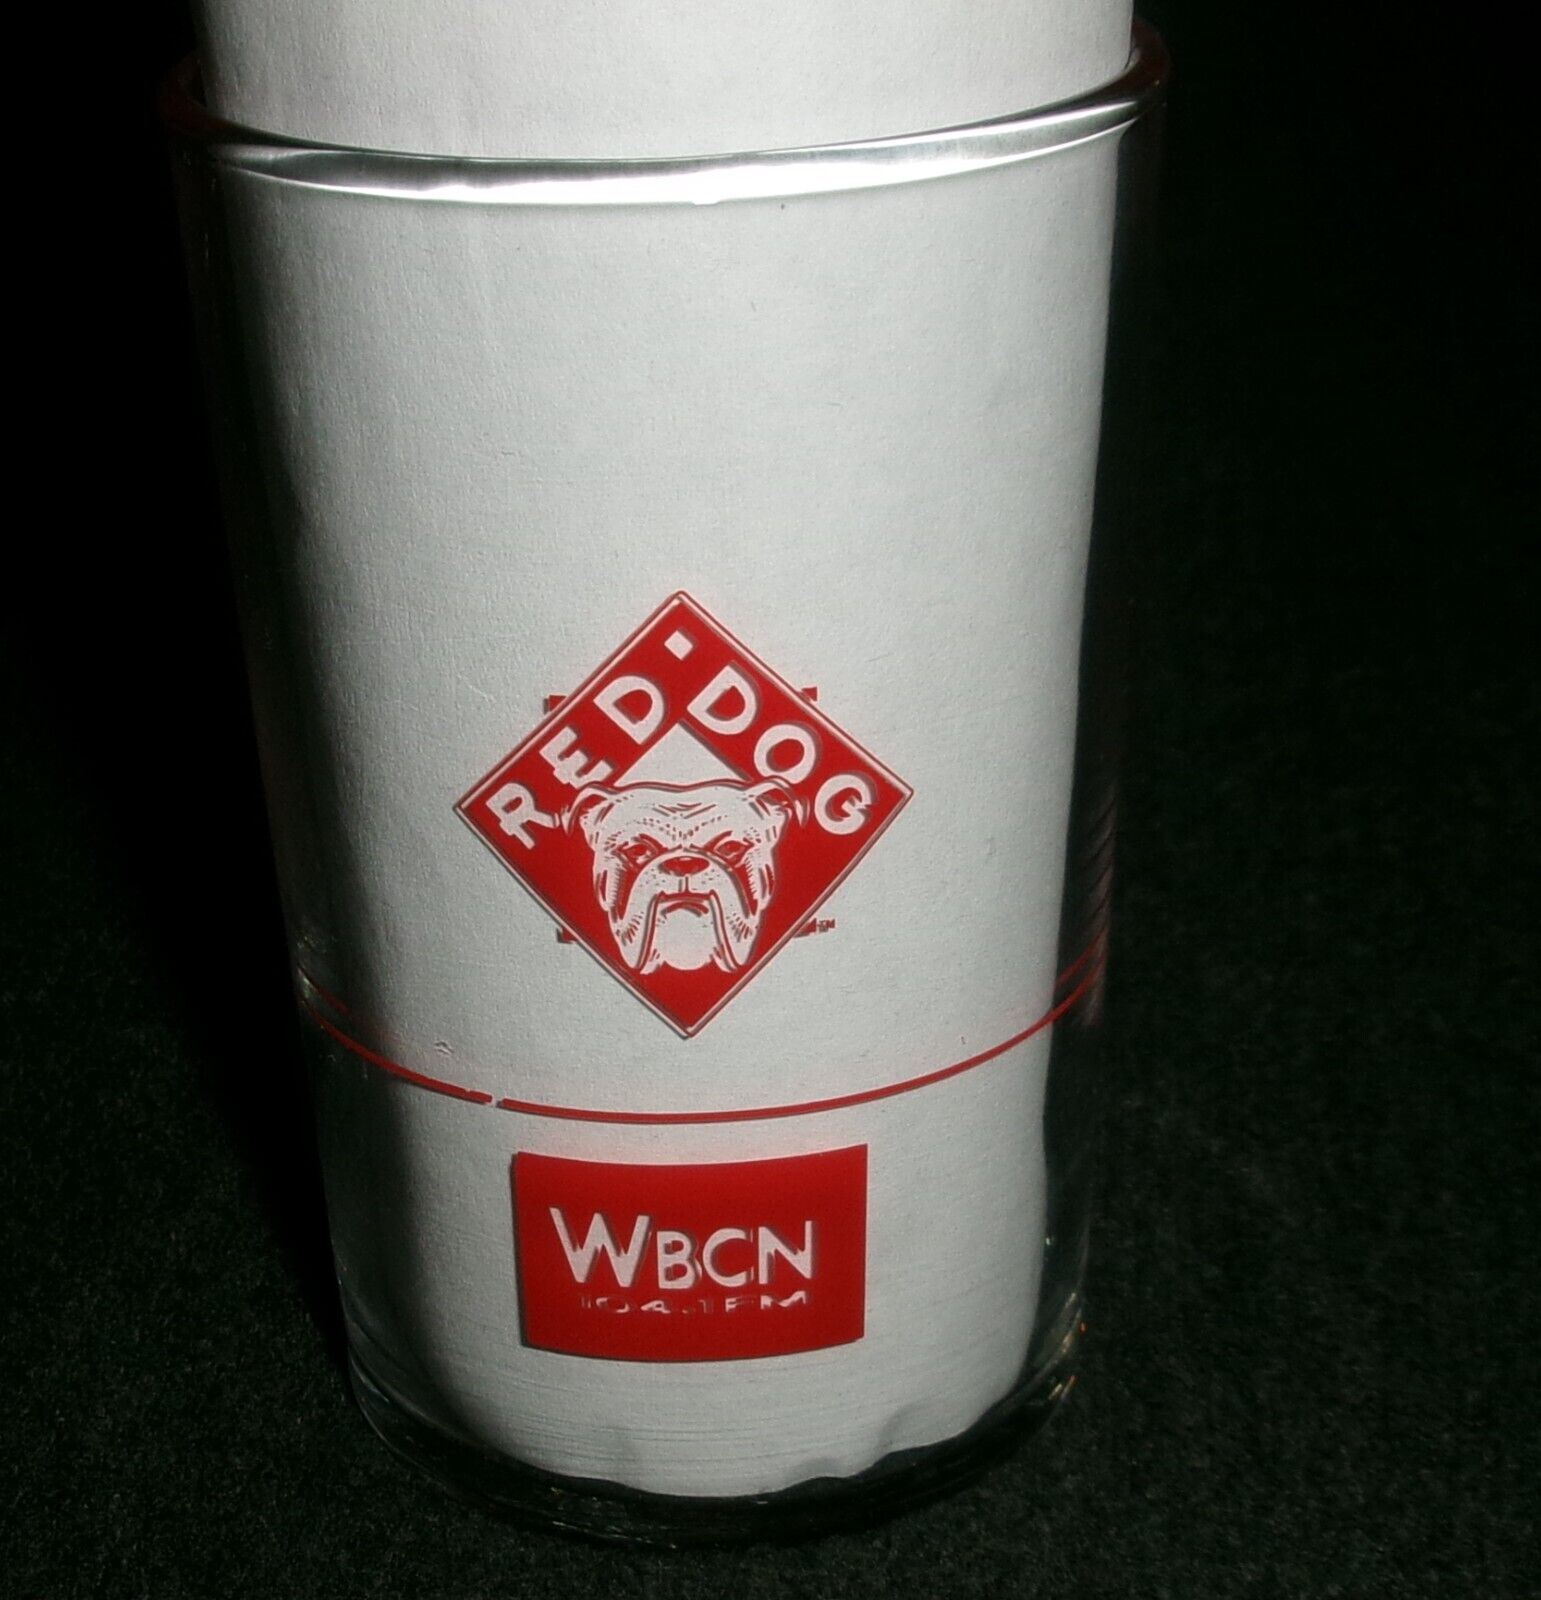 RARE Red Dog Beer Vintage WBCN Radio/Tv at Salem State College Vintage Glass